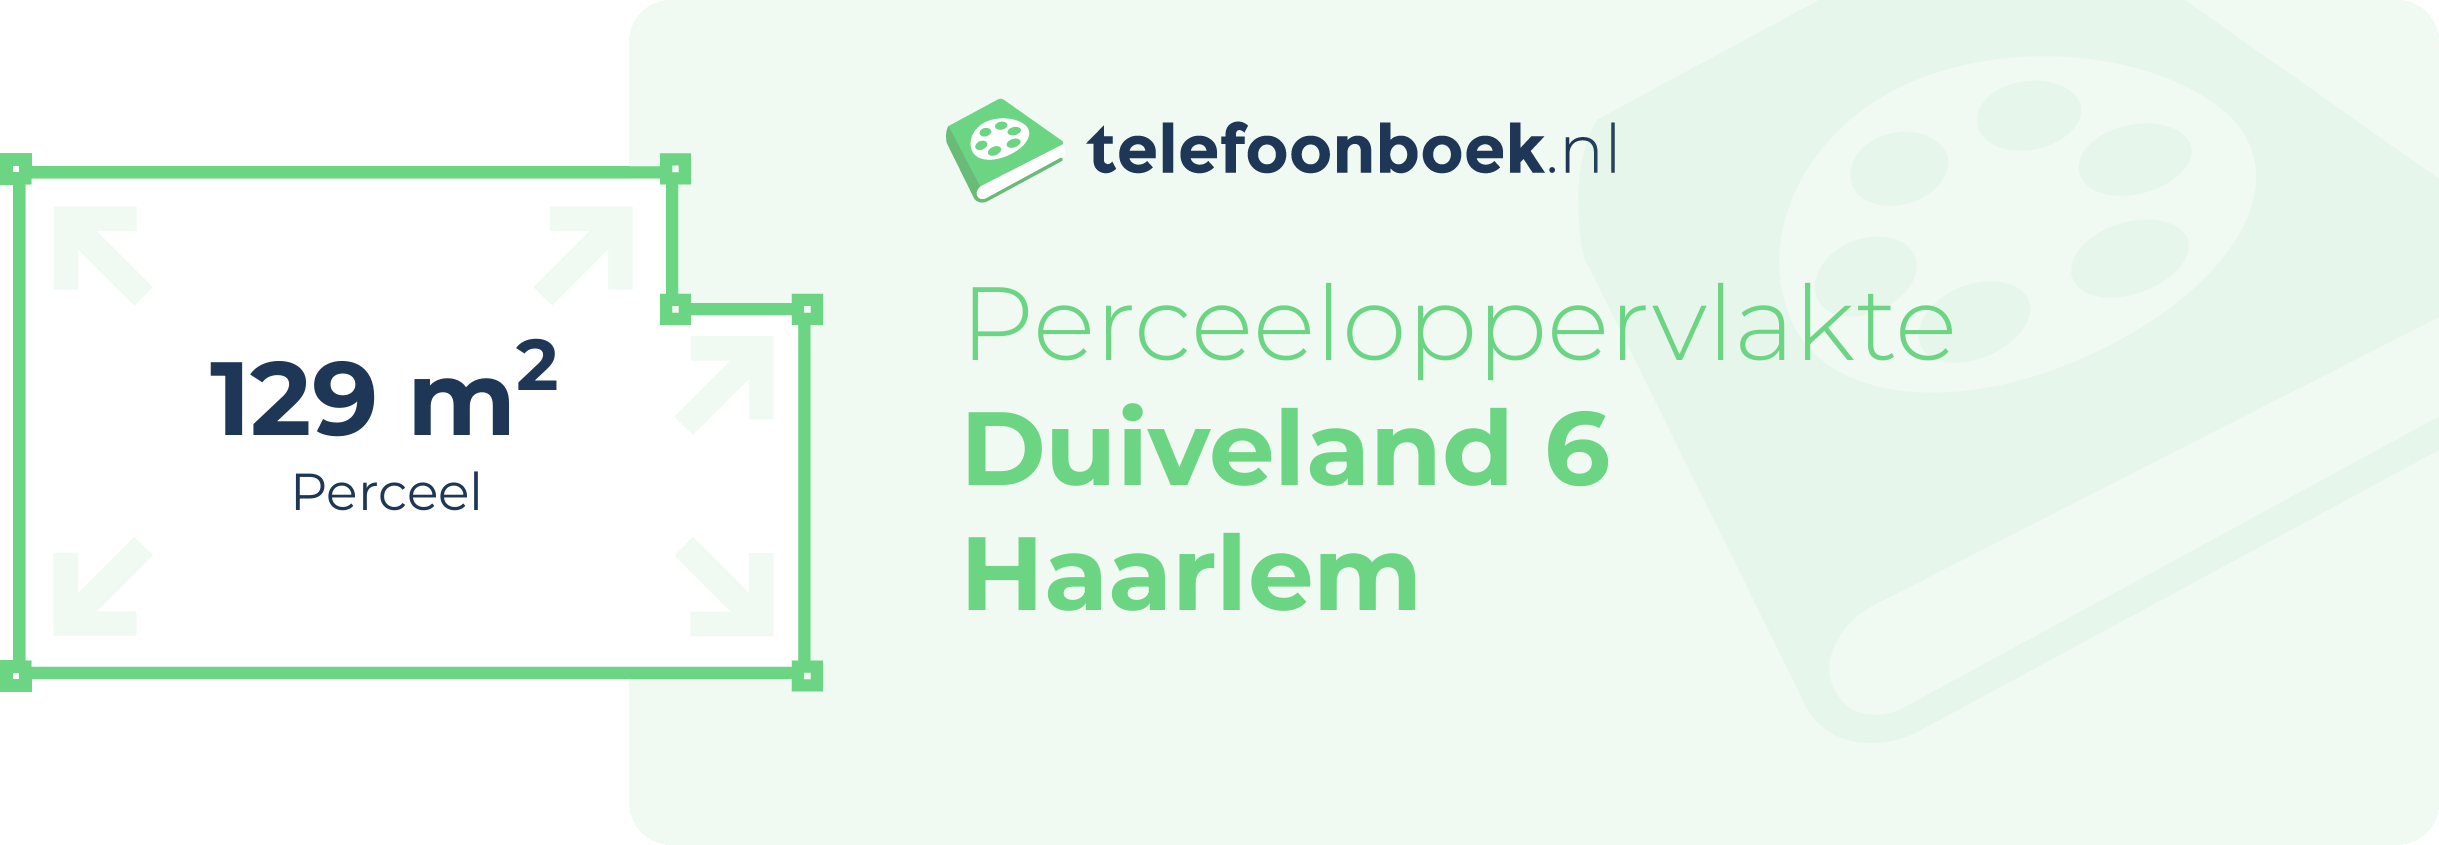 Perceeloppervlakte Duiveland 6 Haarlem